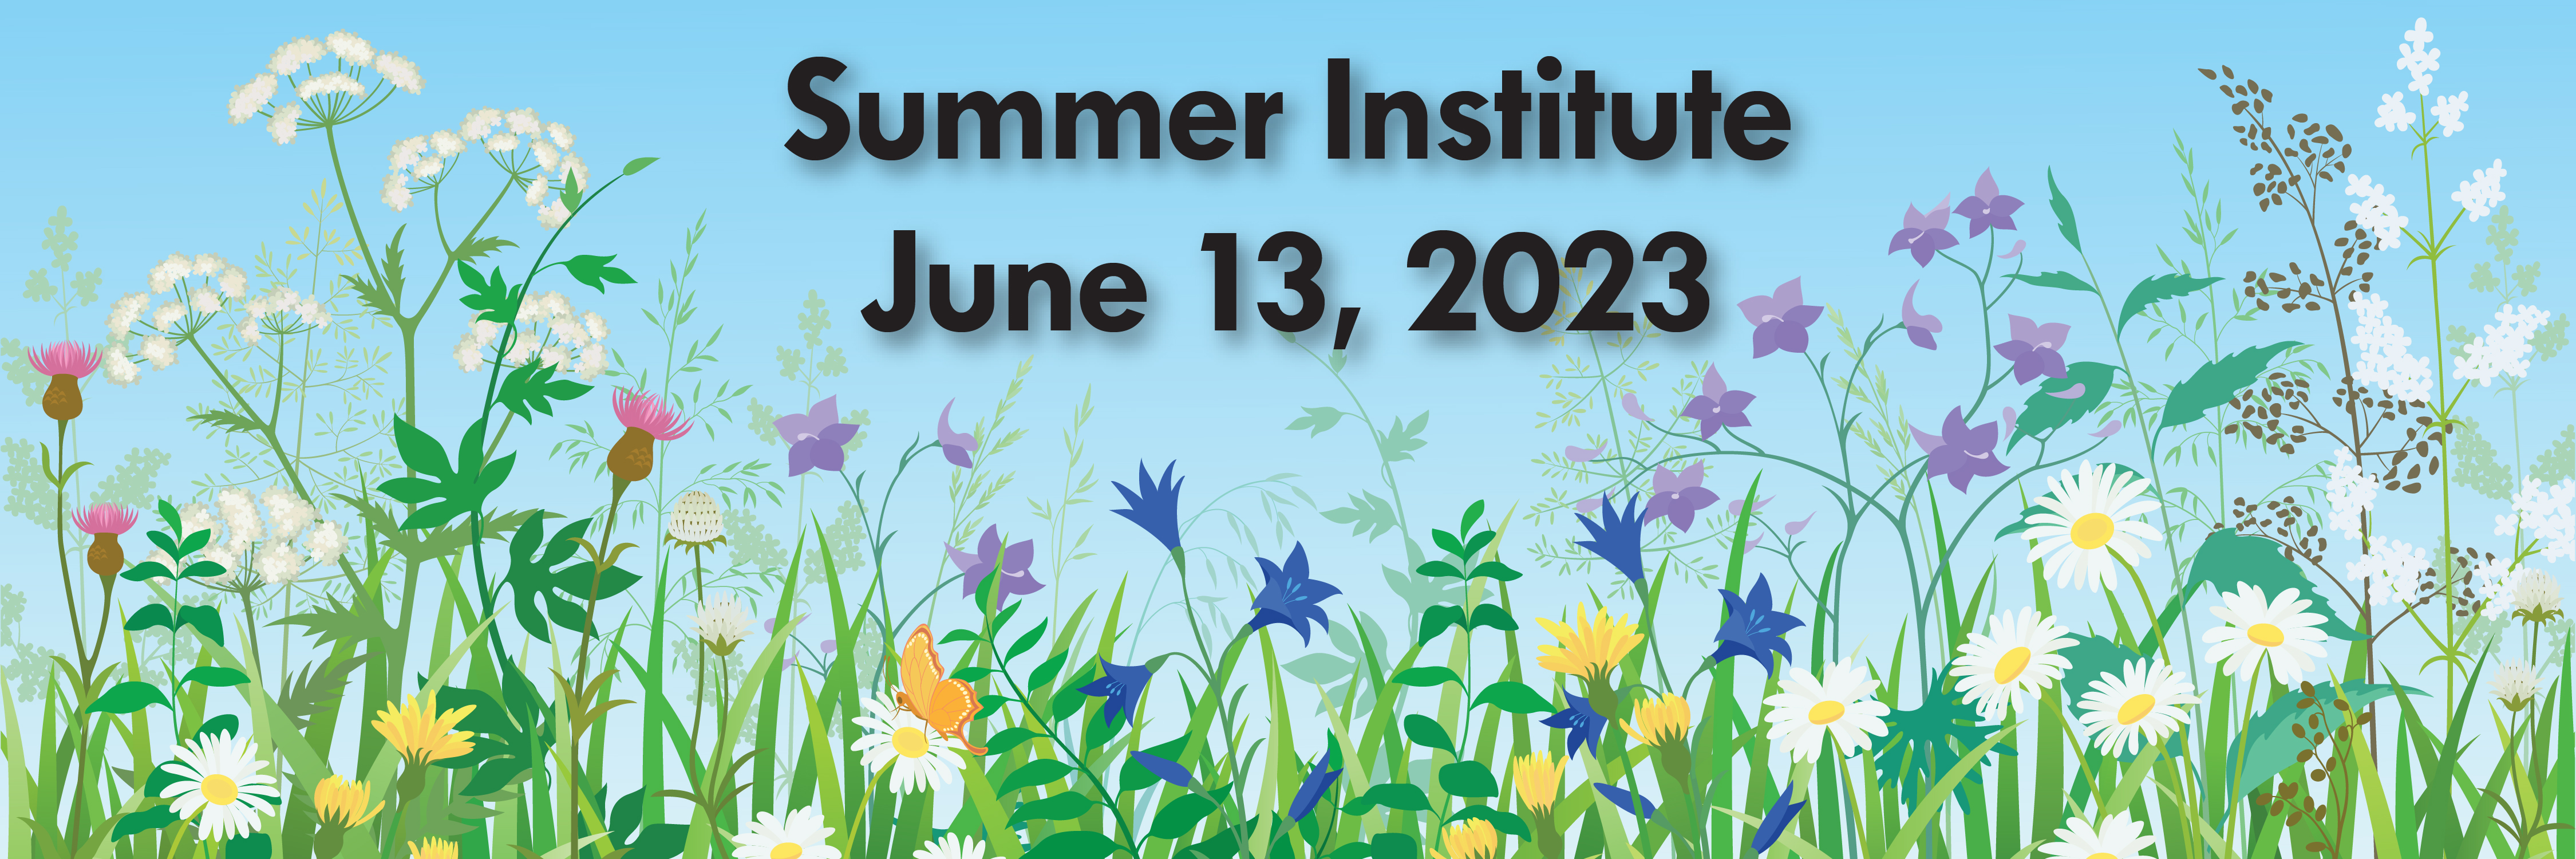 Summer Institute June13, 2023